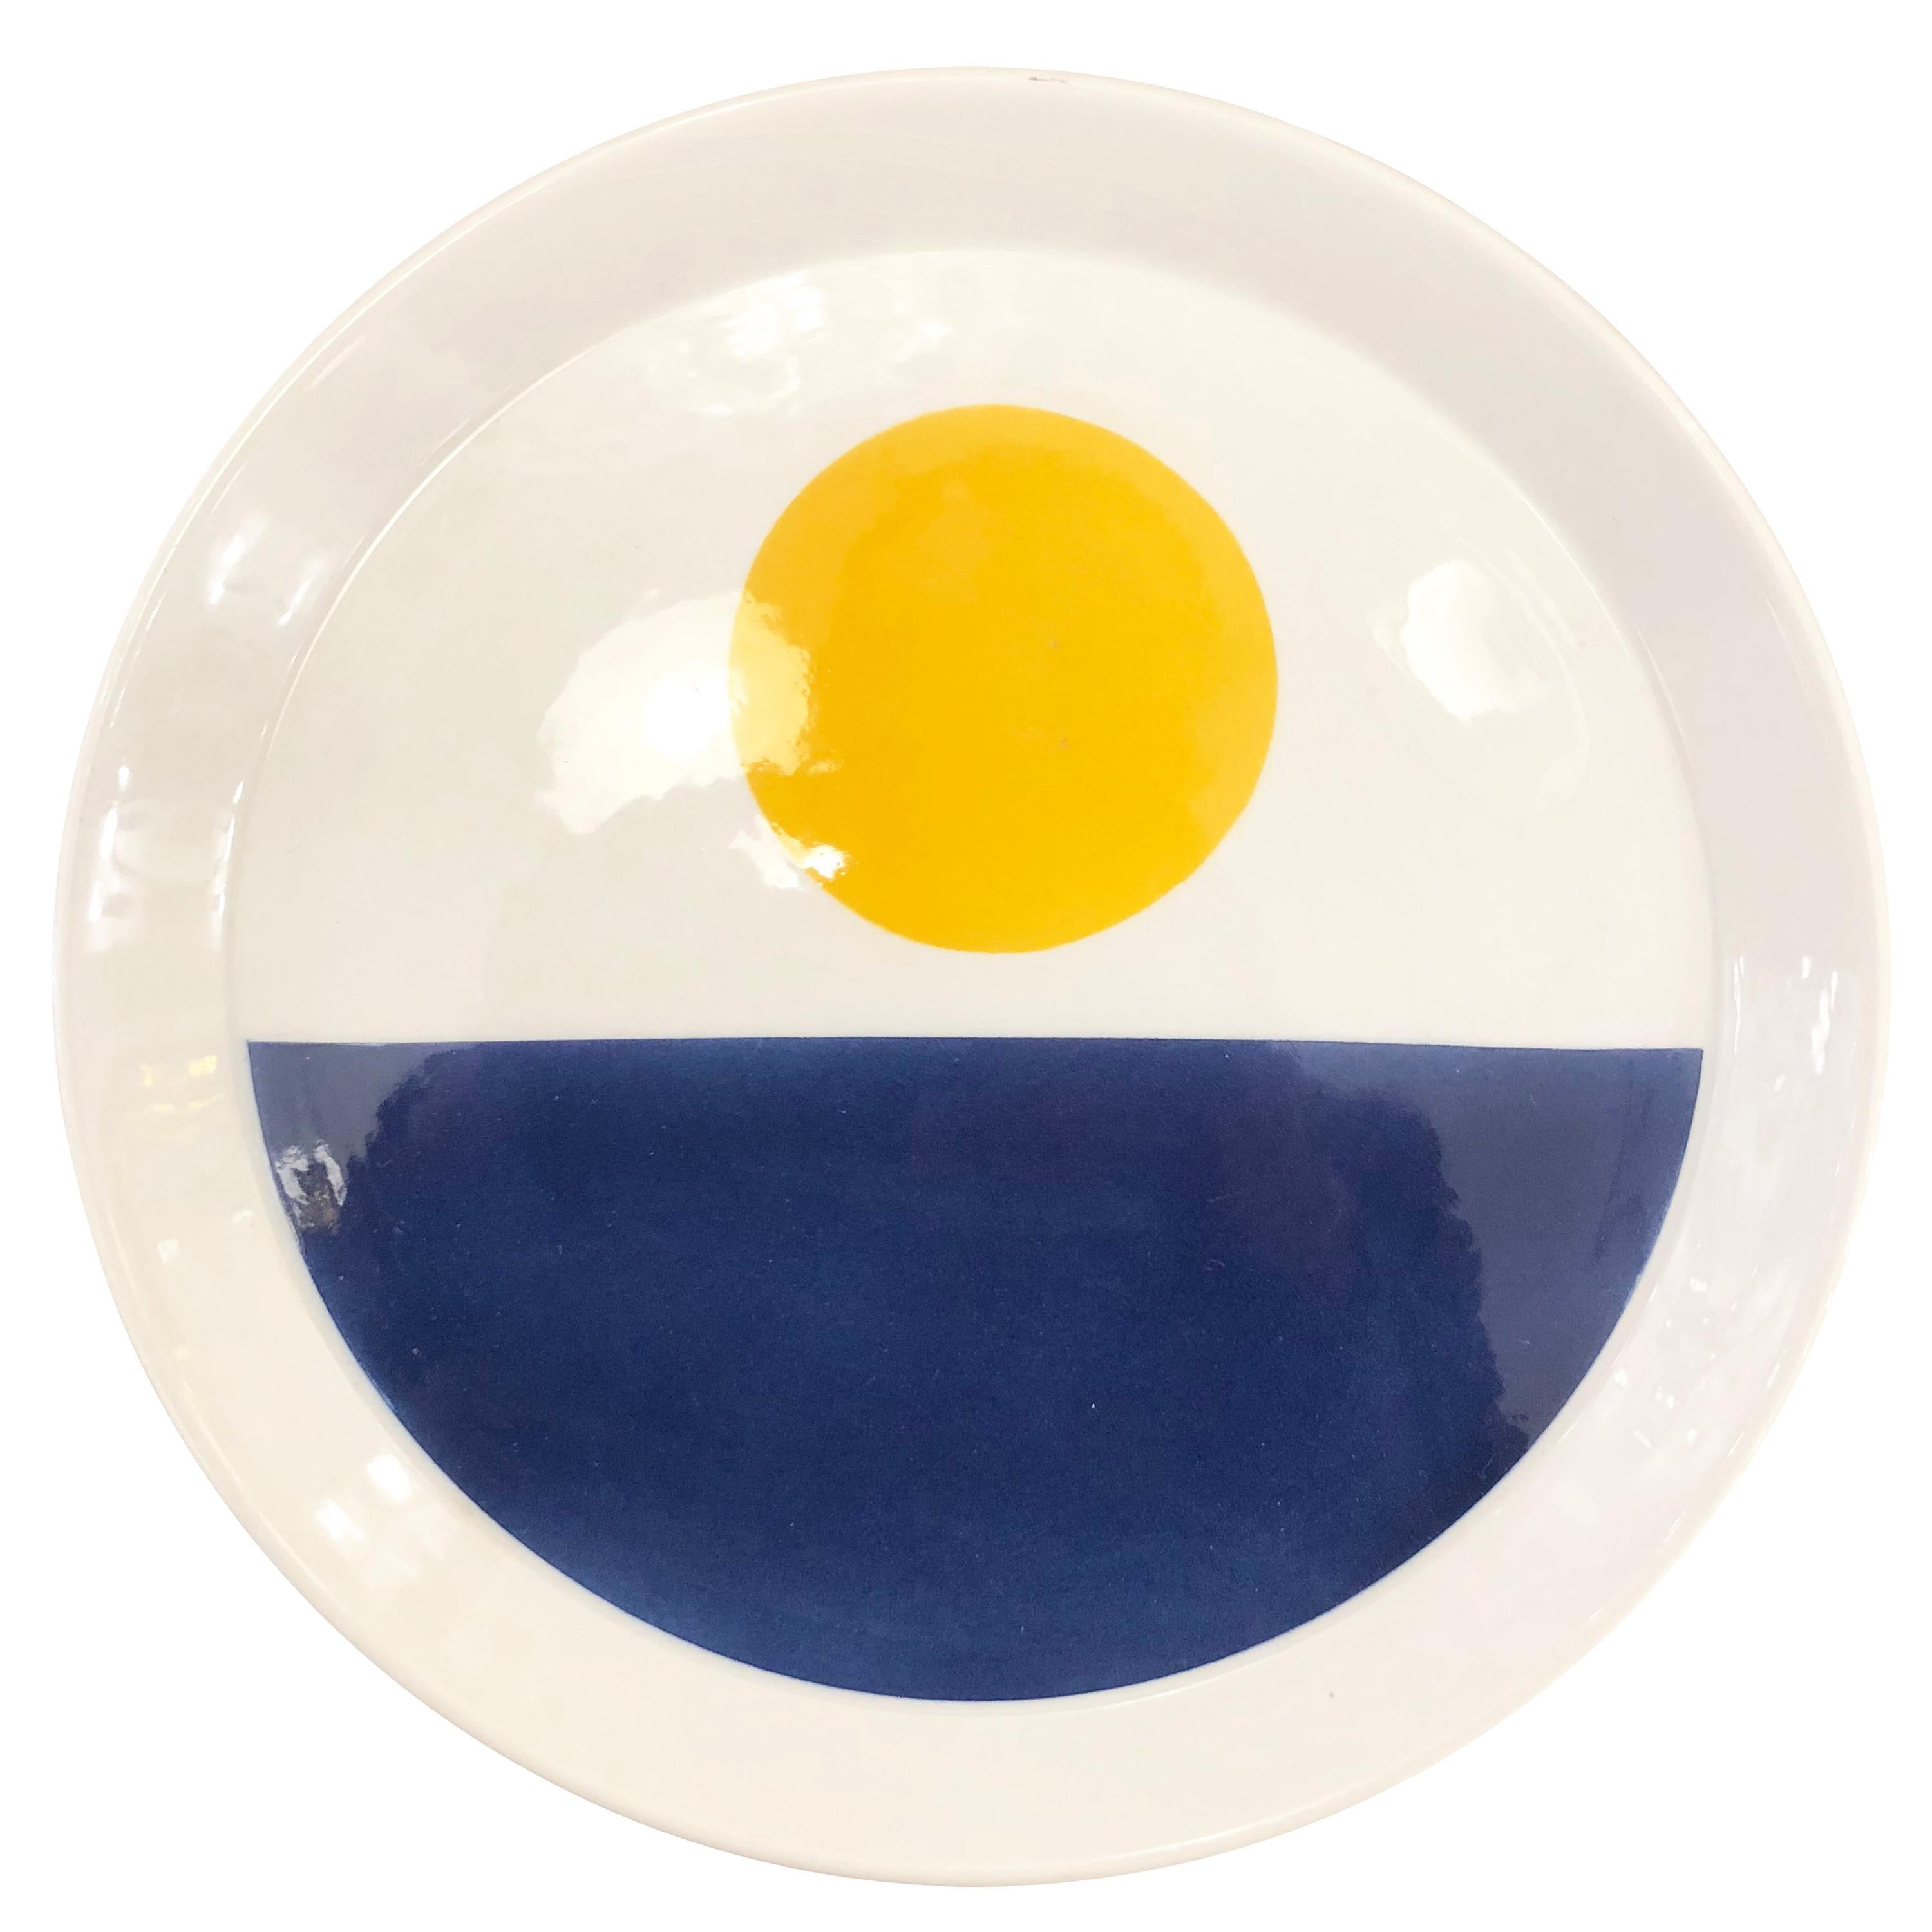 Blue and Yellow Gio Ponti Plate for Ceramiche Franco Pozzi